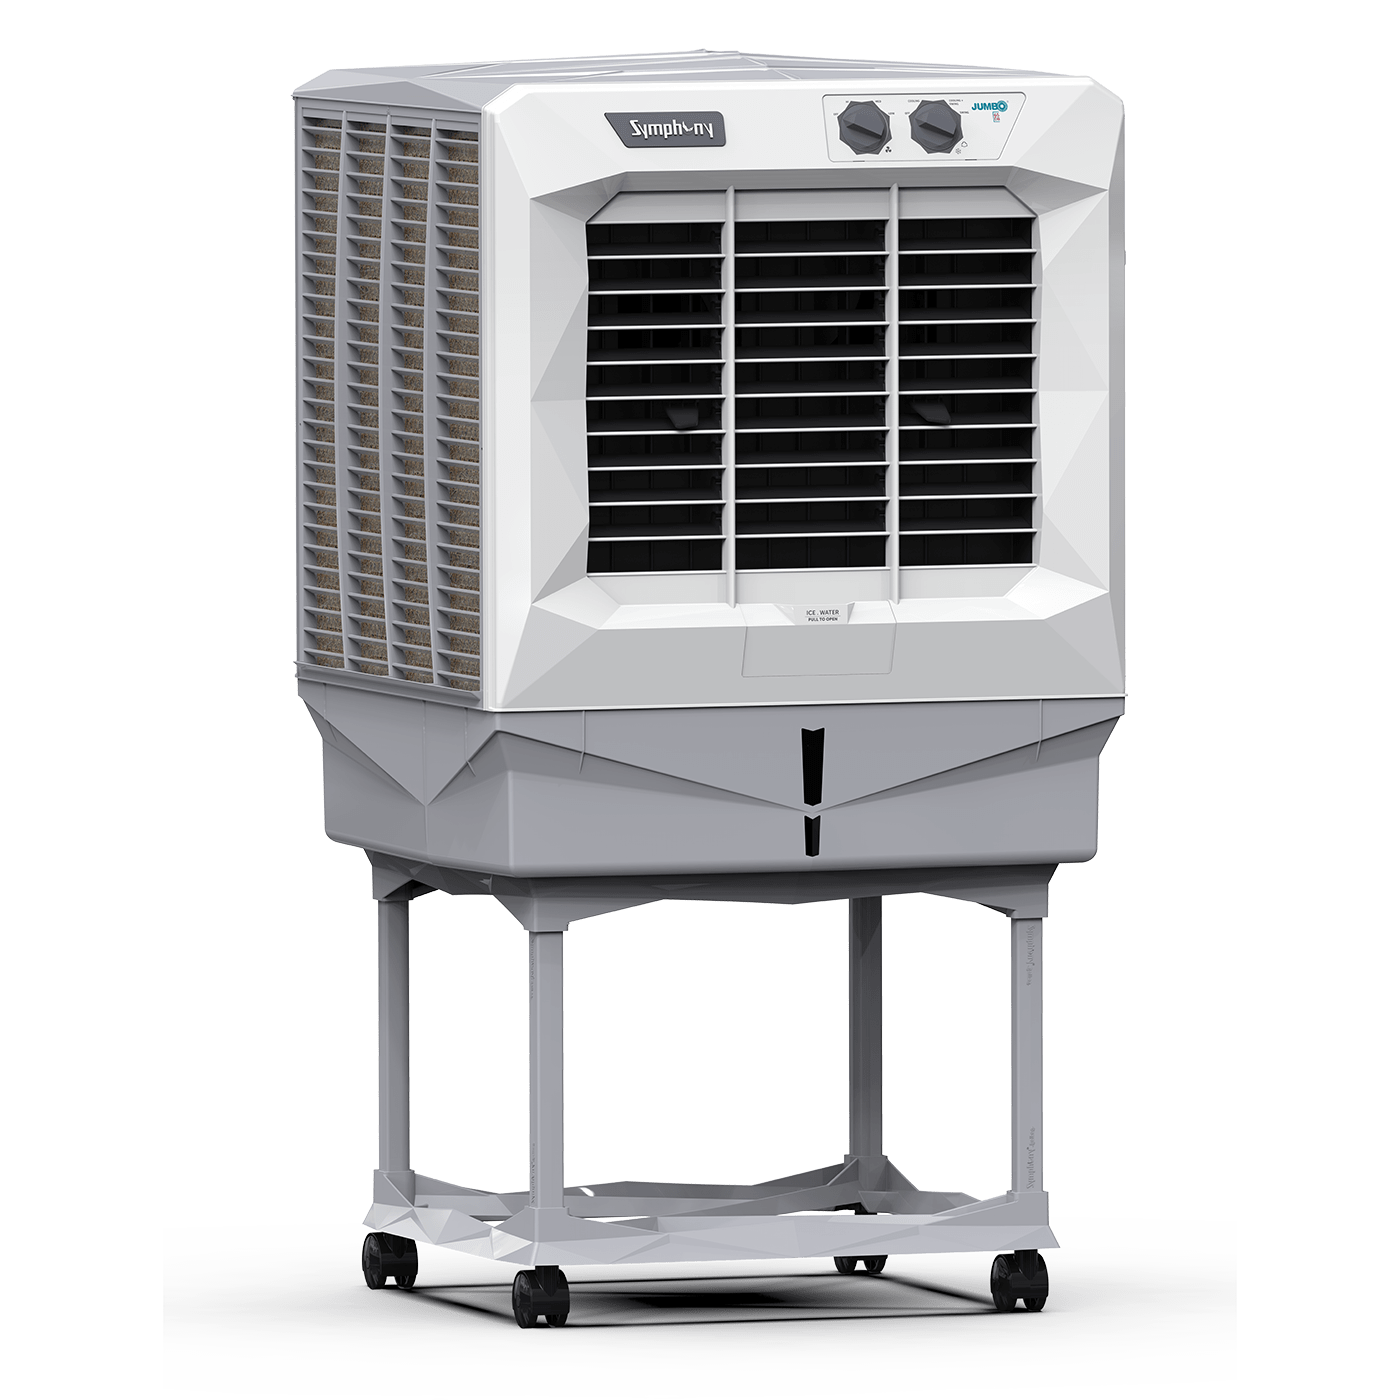 Efficient desert air cooler for optimal cooling